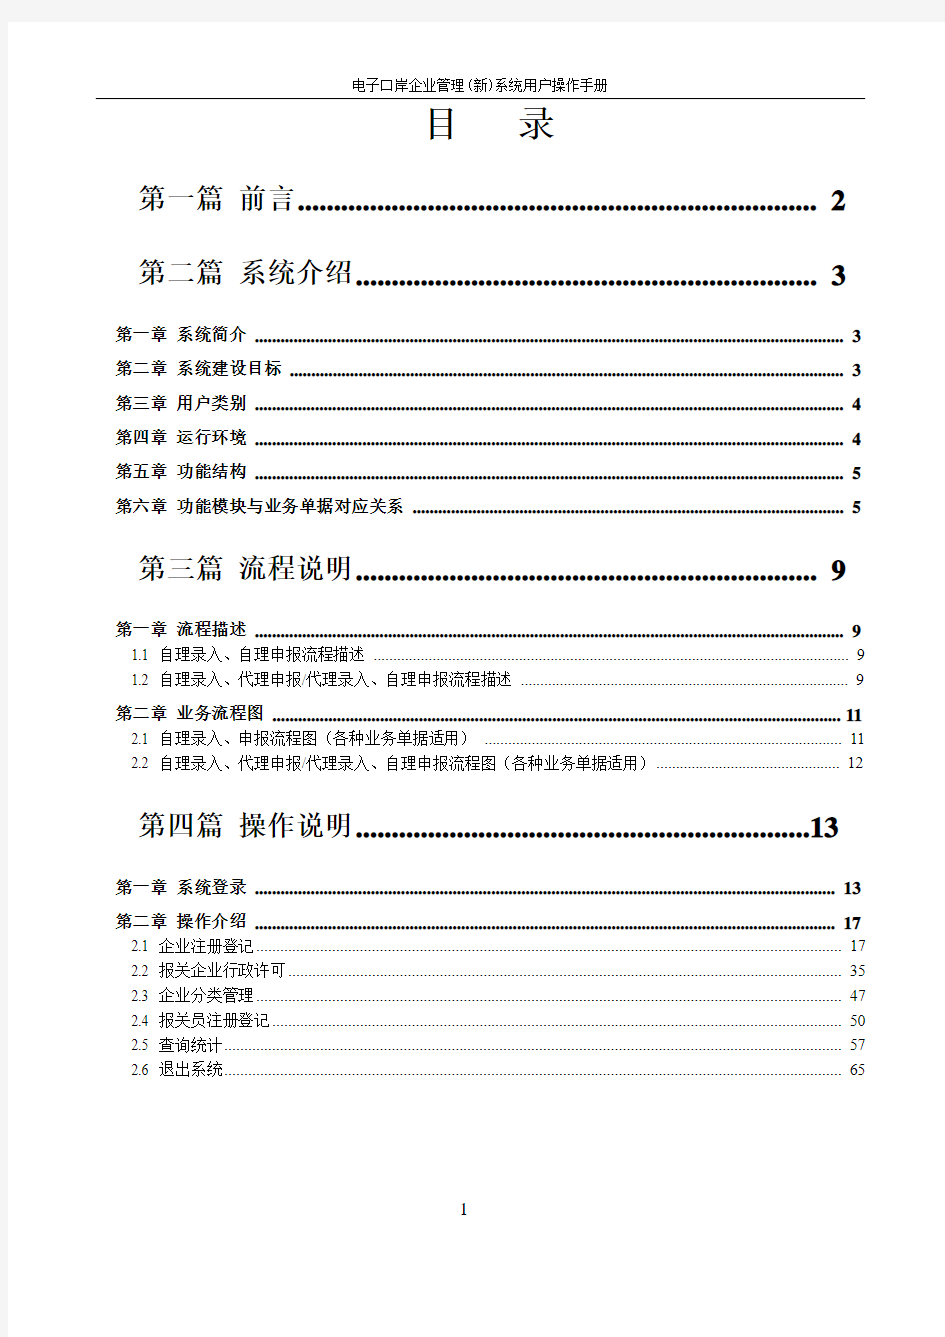 中国海关电子口岸QP系统用户操作手册(2012年)